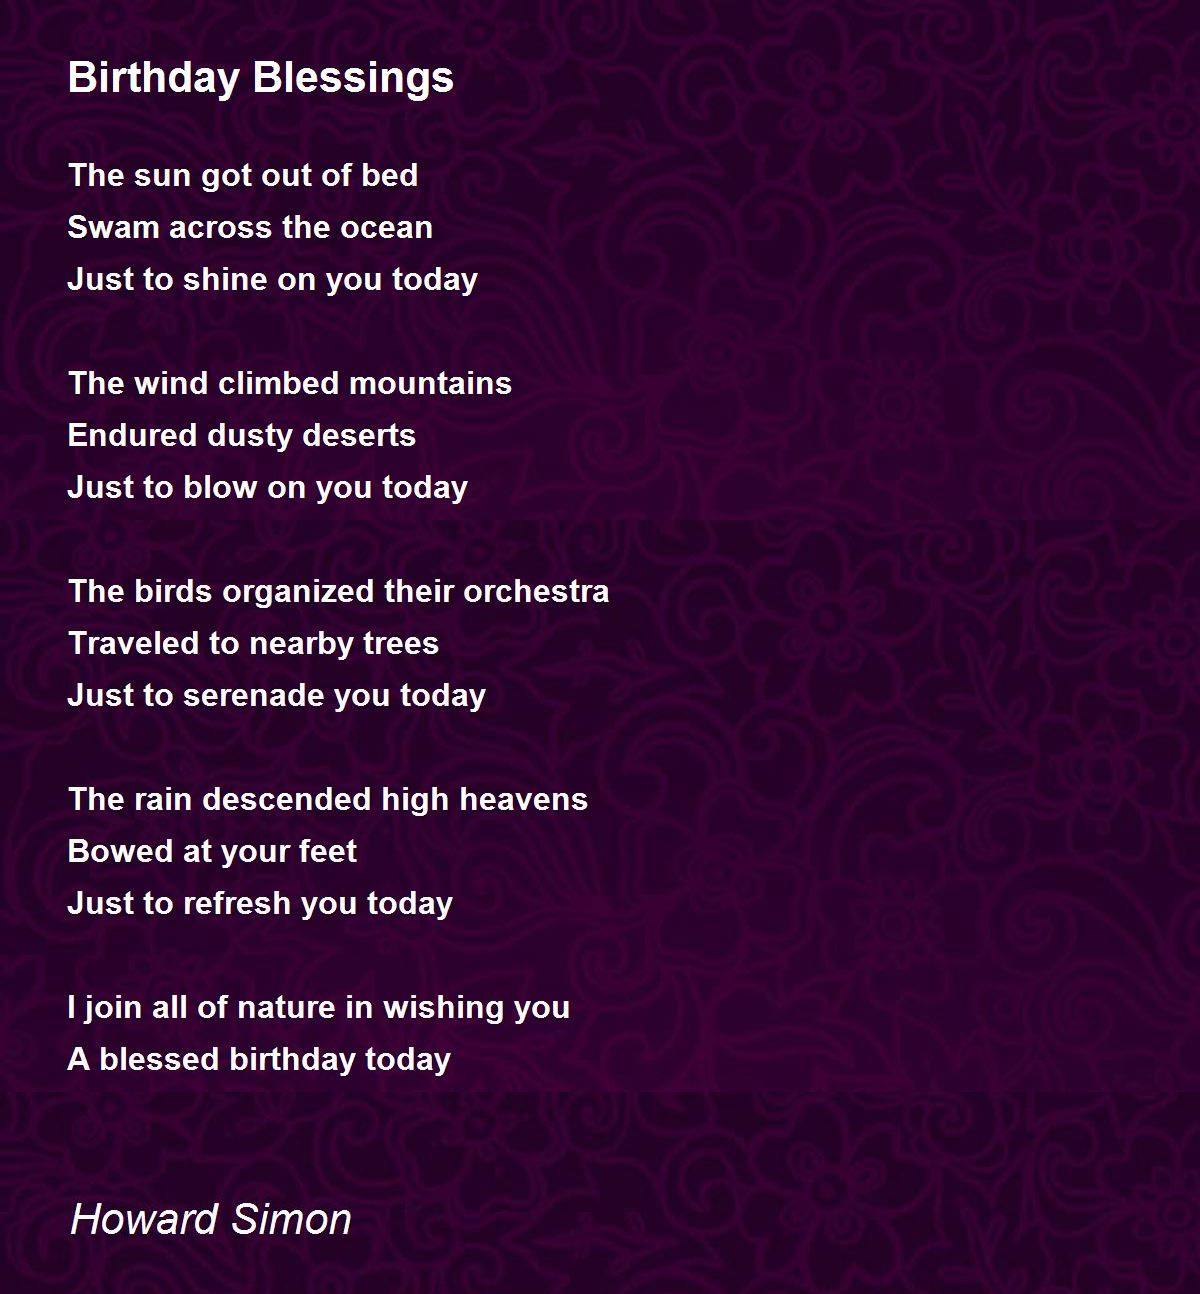 Birthday Blessings Poem by Howard Simon - Poem Hunter